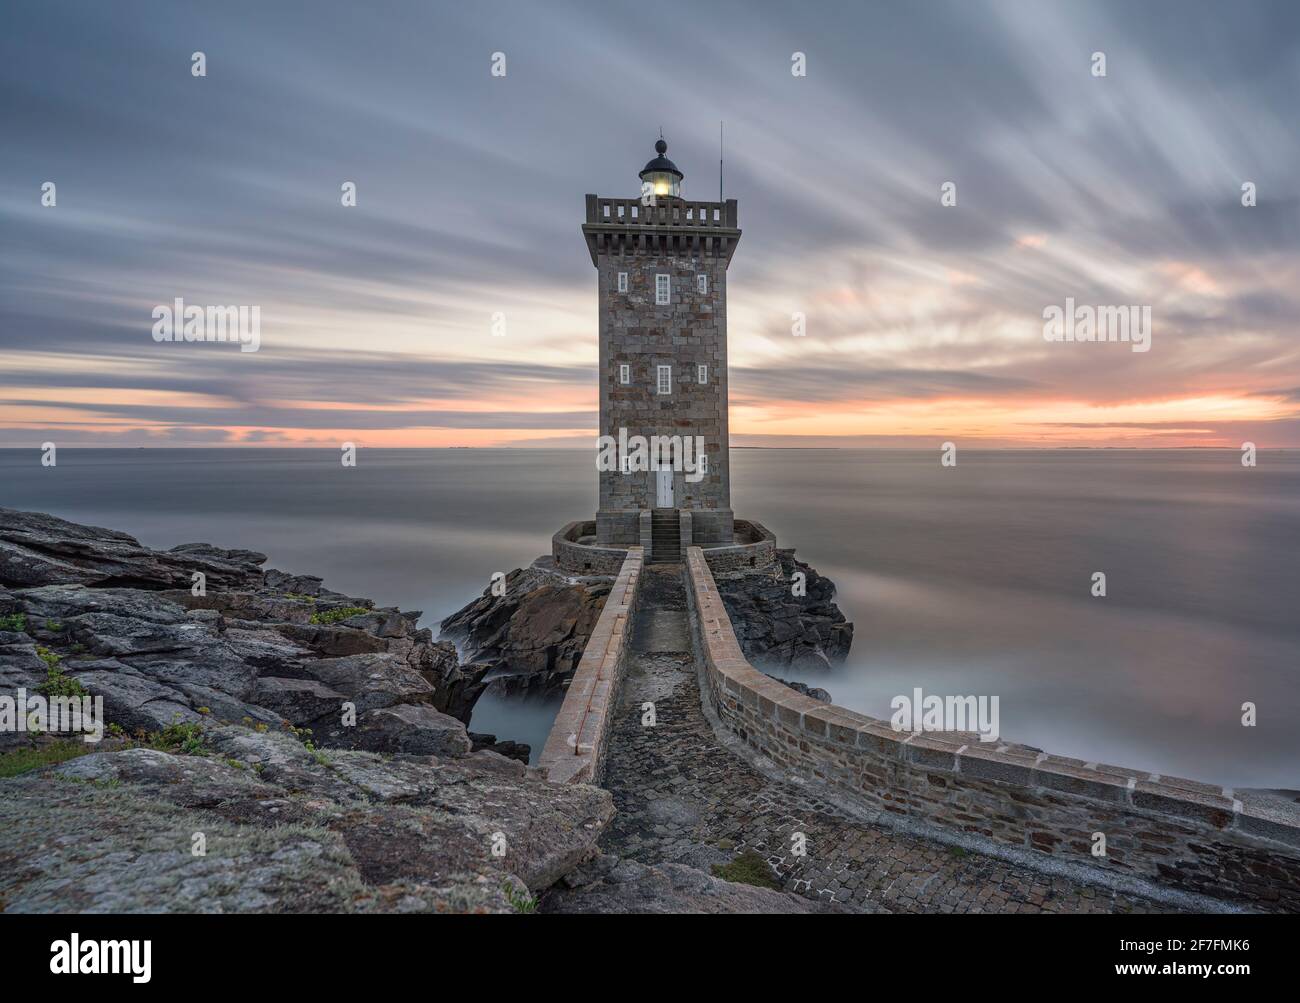 Longue exposition à l'heure bleue au phare de Kermorvan, Finistère, Bretagne, France, Europe Banque D'Images